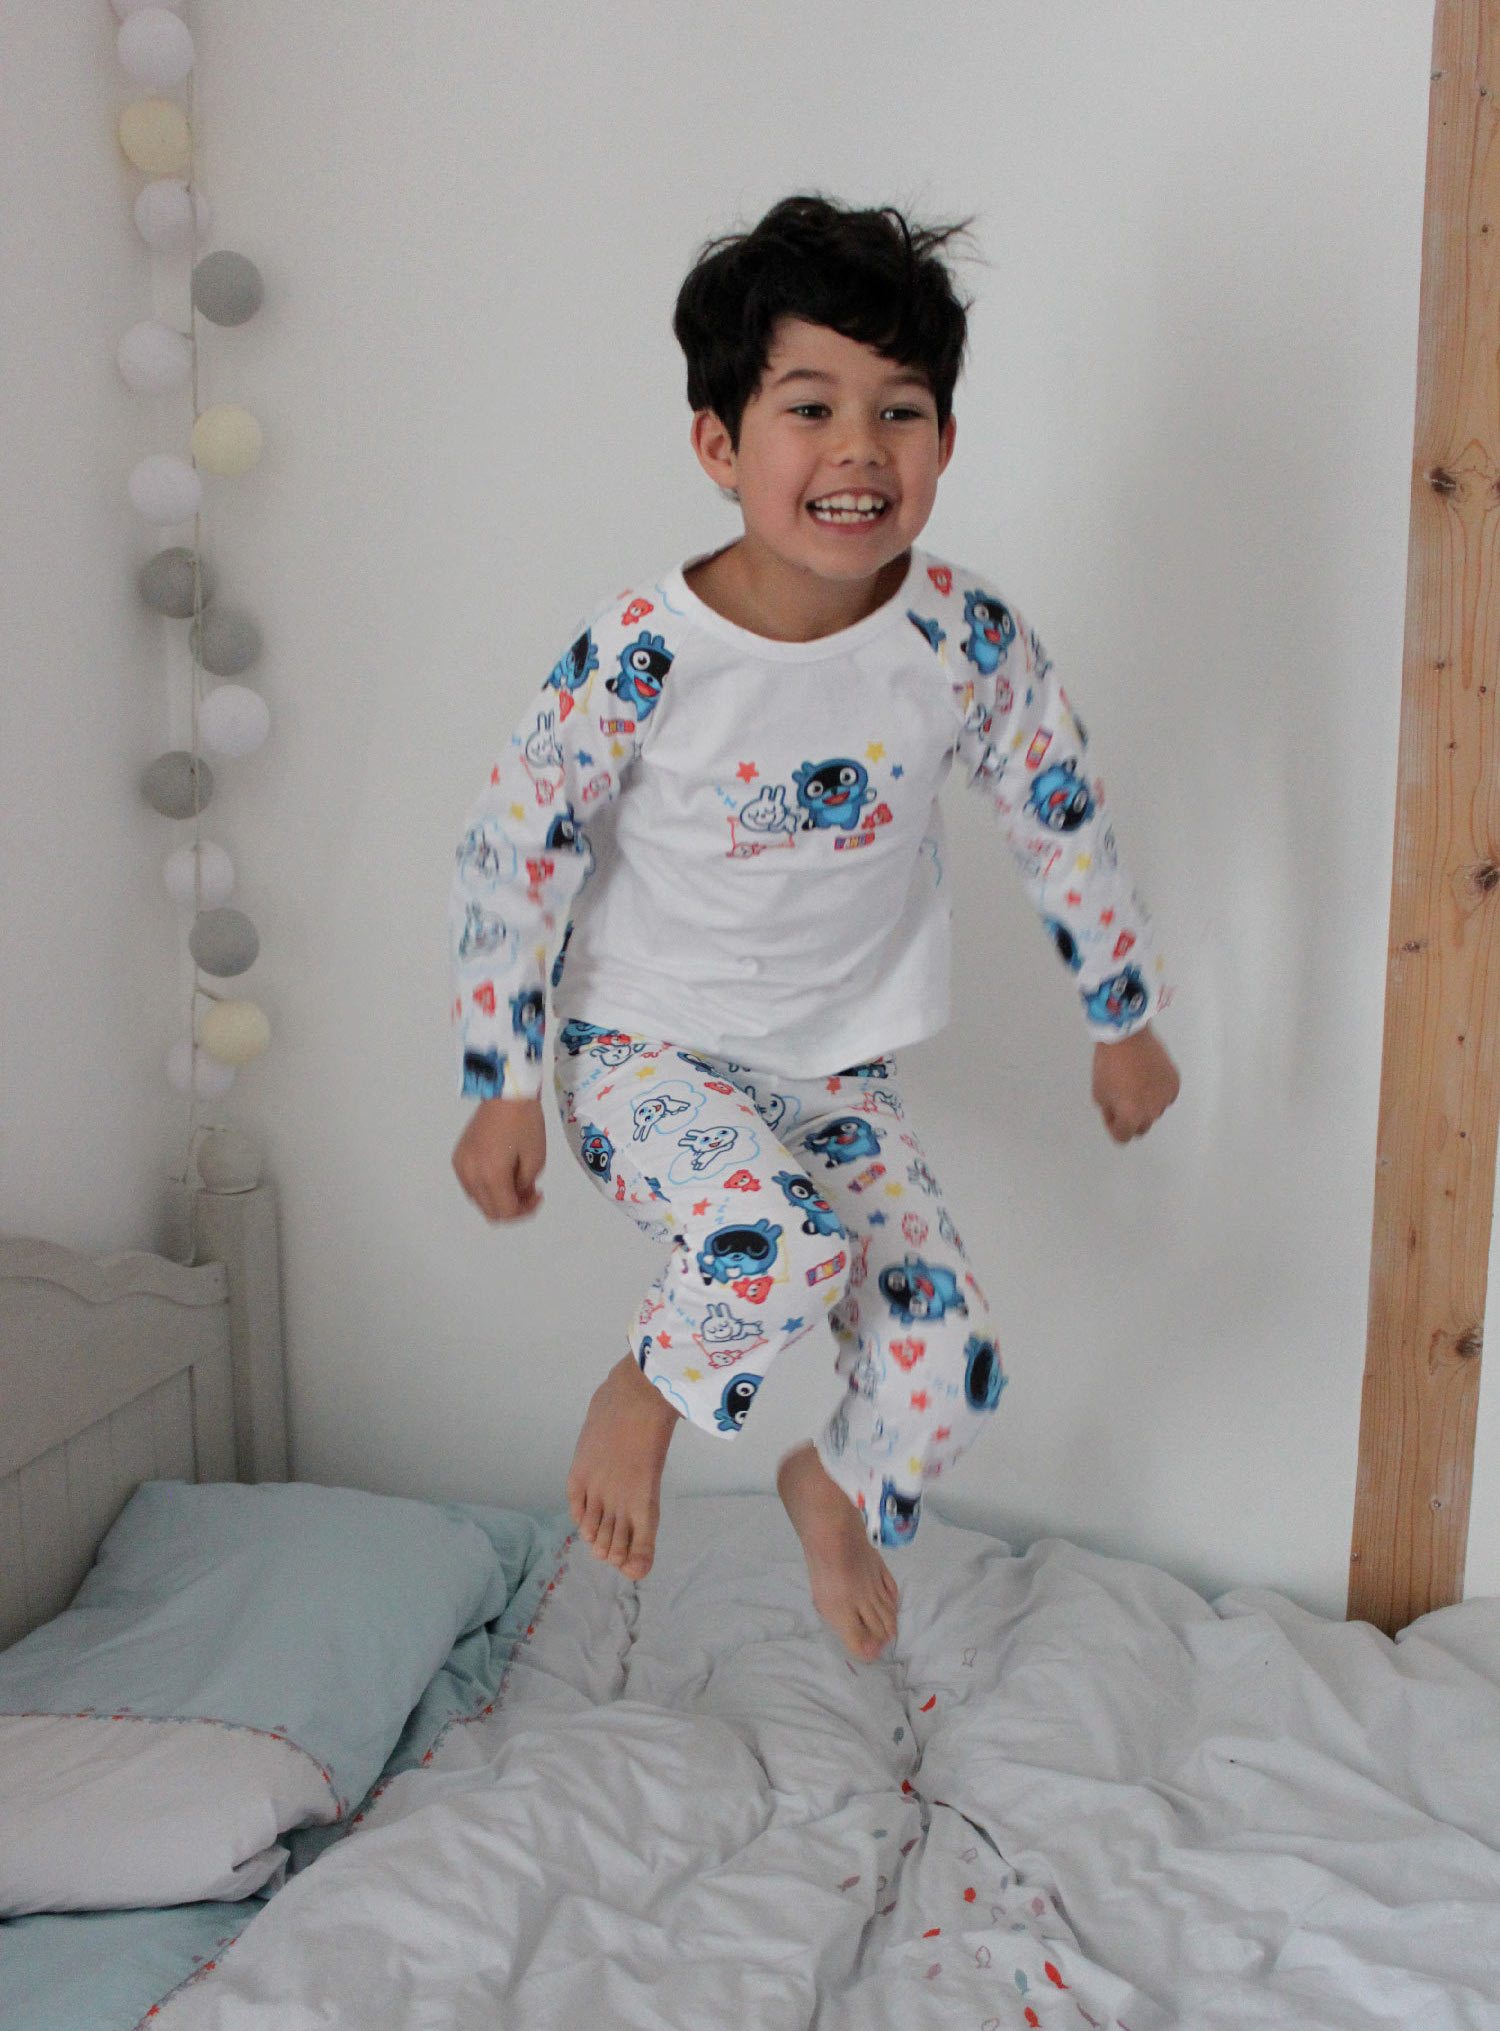 Enfant met son pyjama